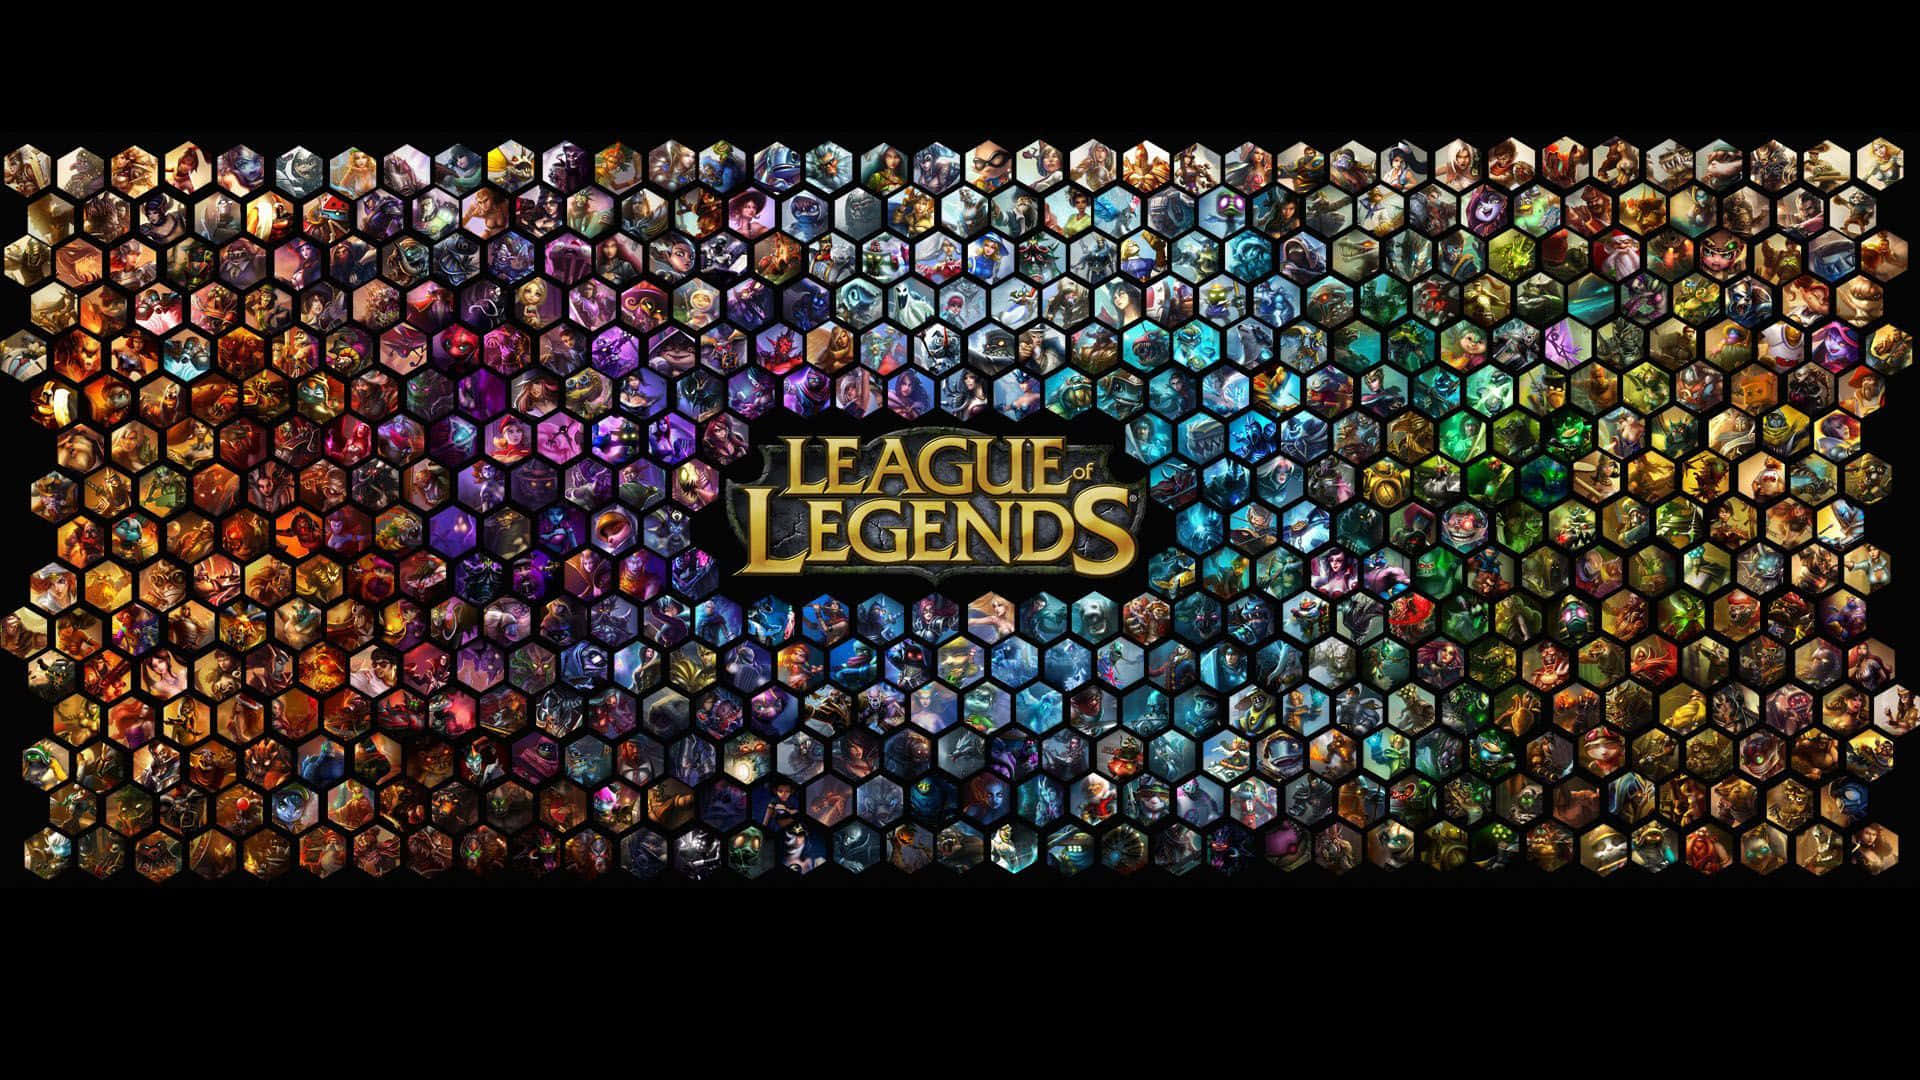 Sfidate Stesso Per Raggiungere I Tuoi Obiettivi In League Of Legends